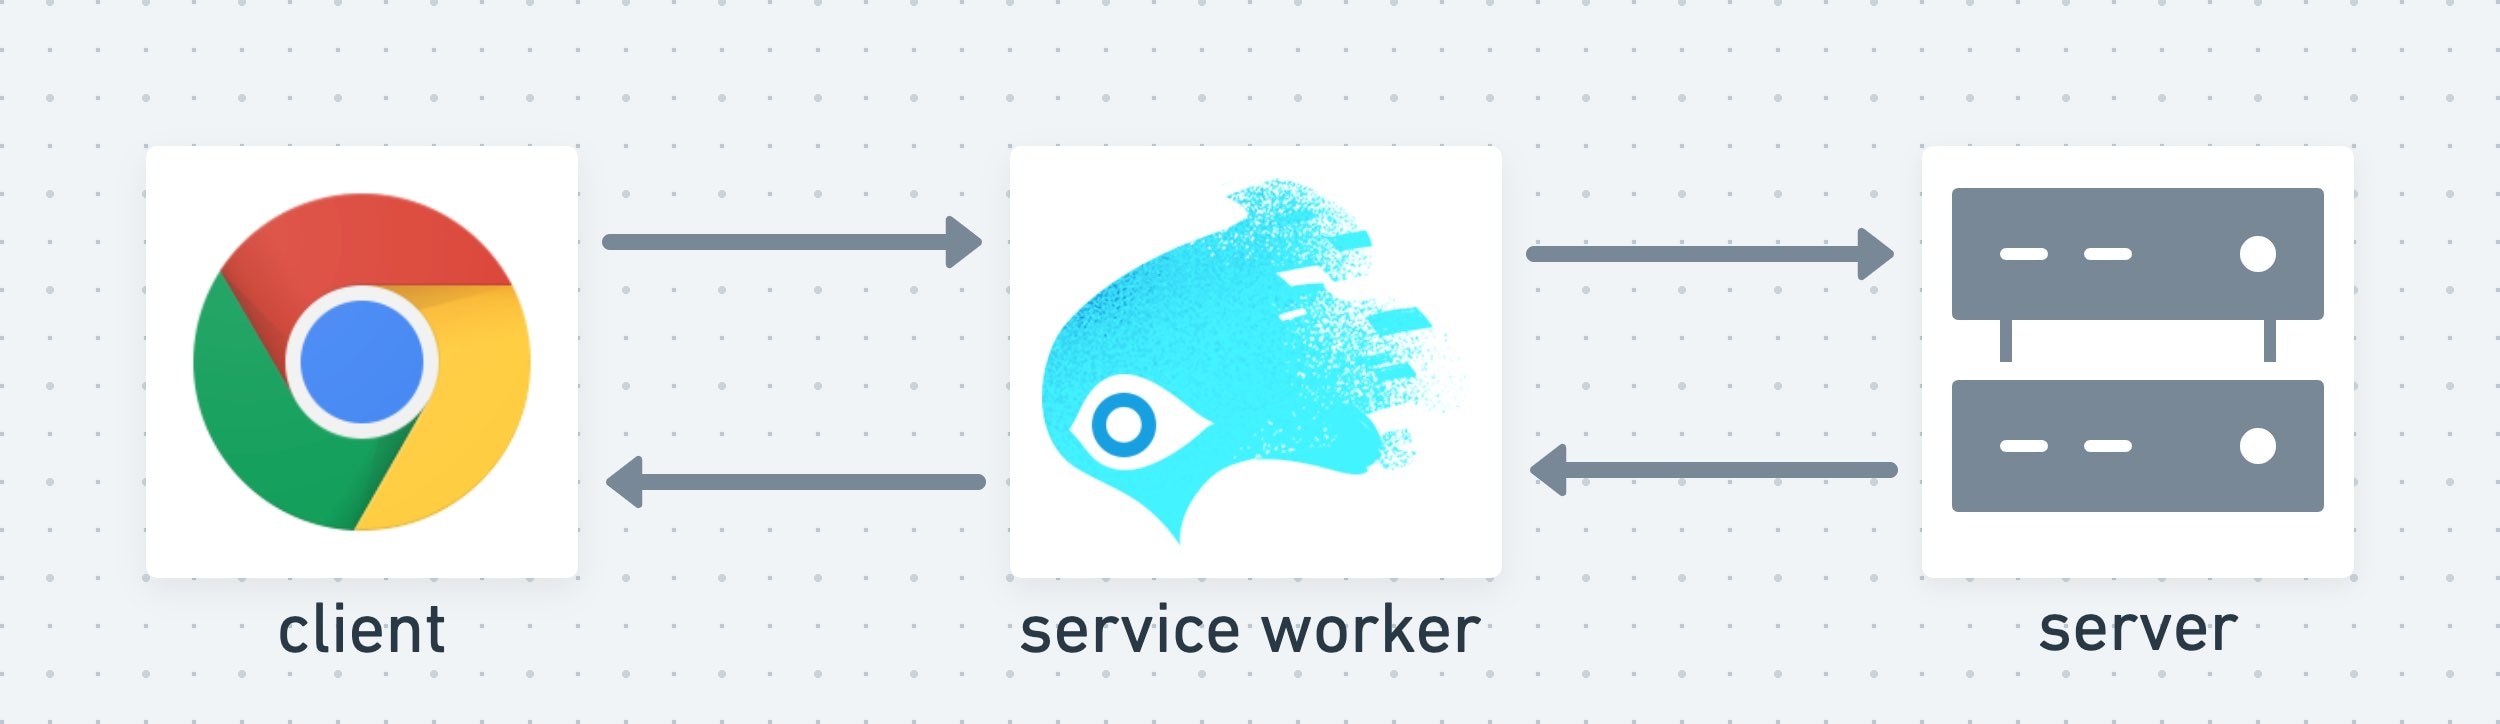 Un service worker actúa como una capa intermedia entre el cliente y el servidor